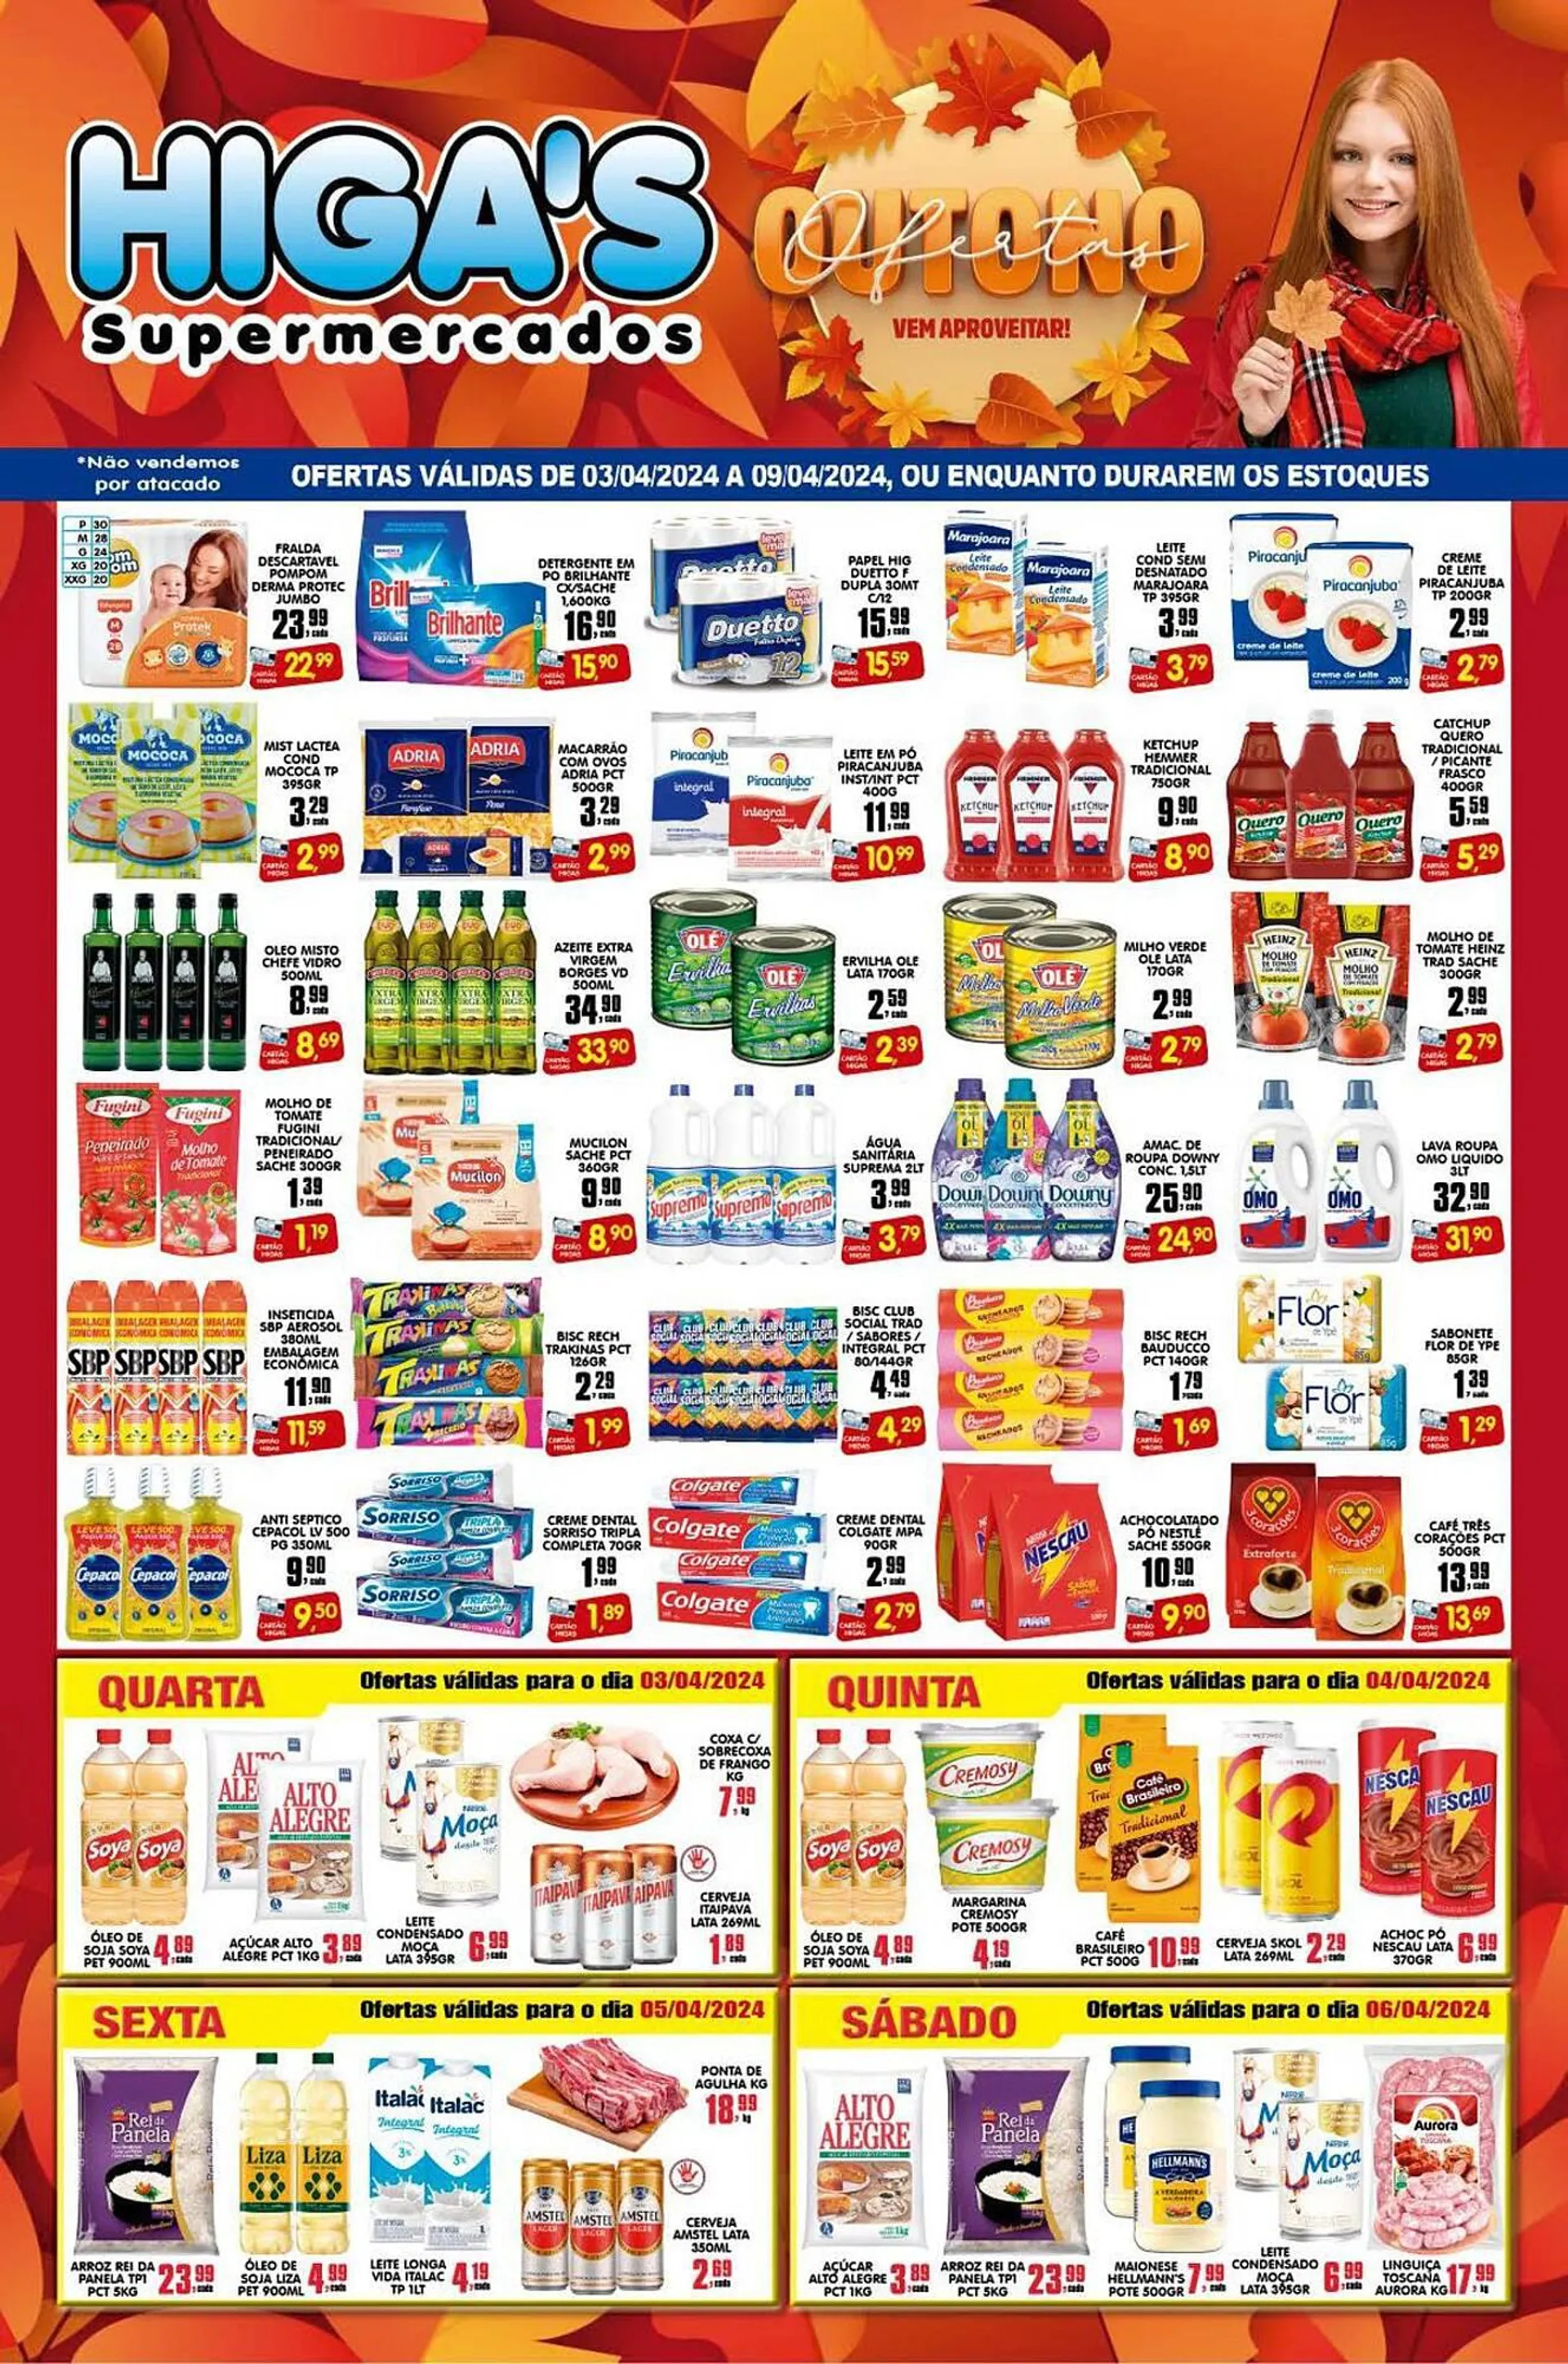 Encarte de Catálogo Higa's Supermercado 2 de abril até 9 de abril 2024 - Pagina 1